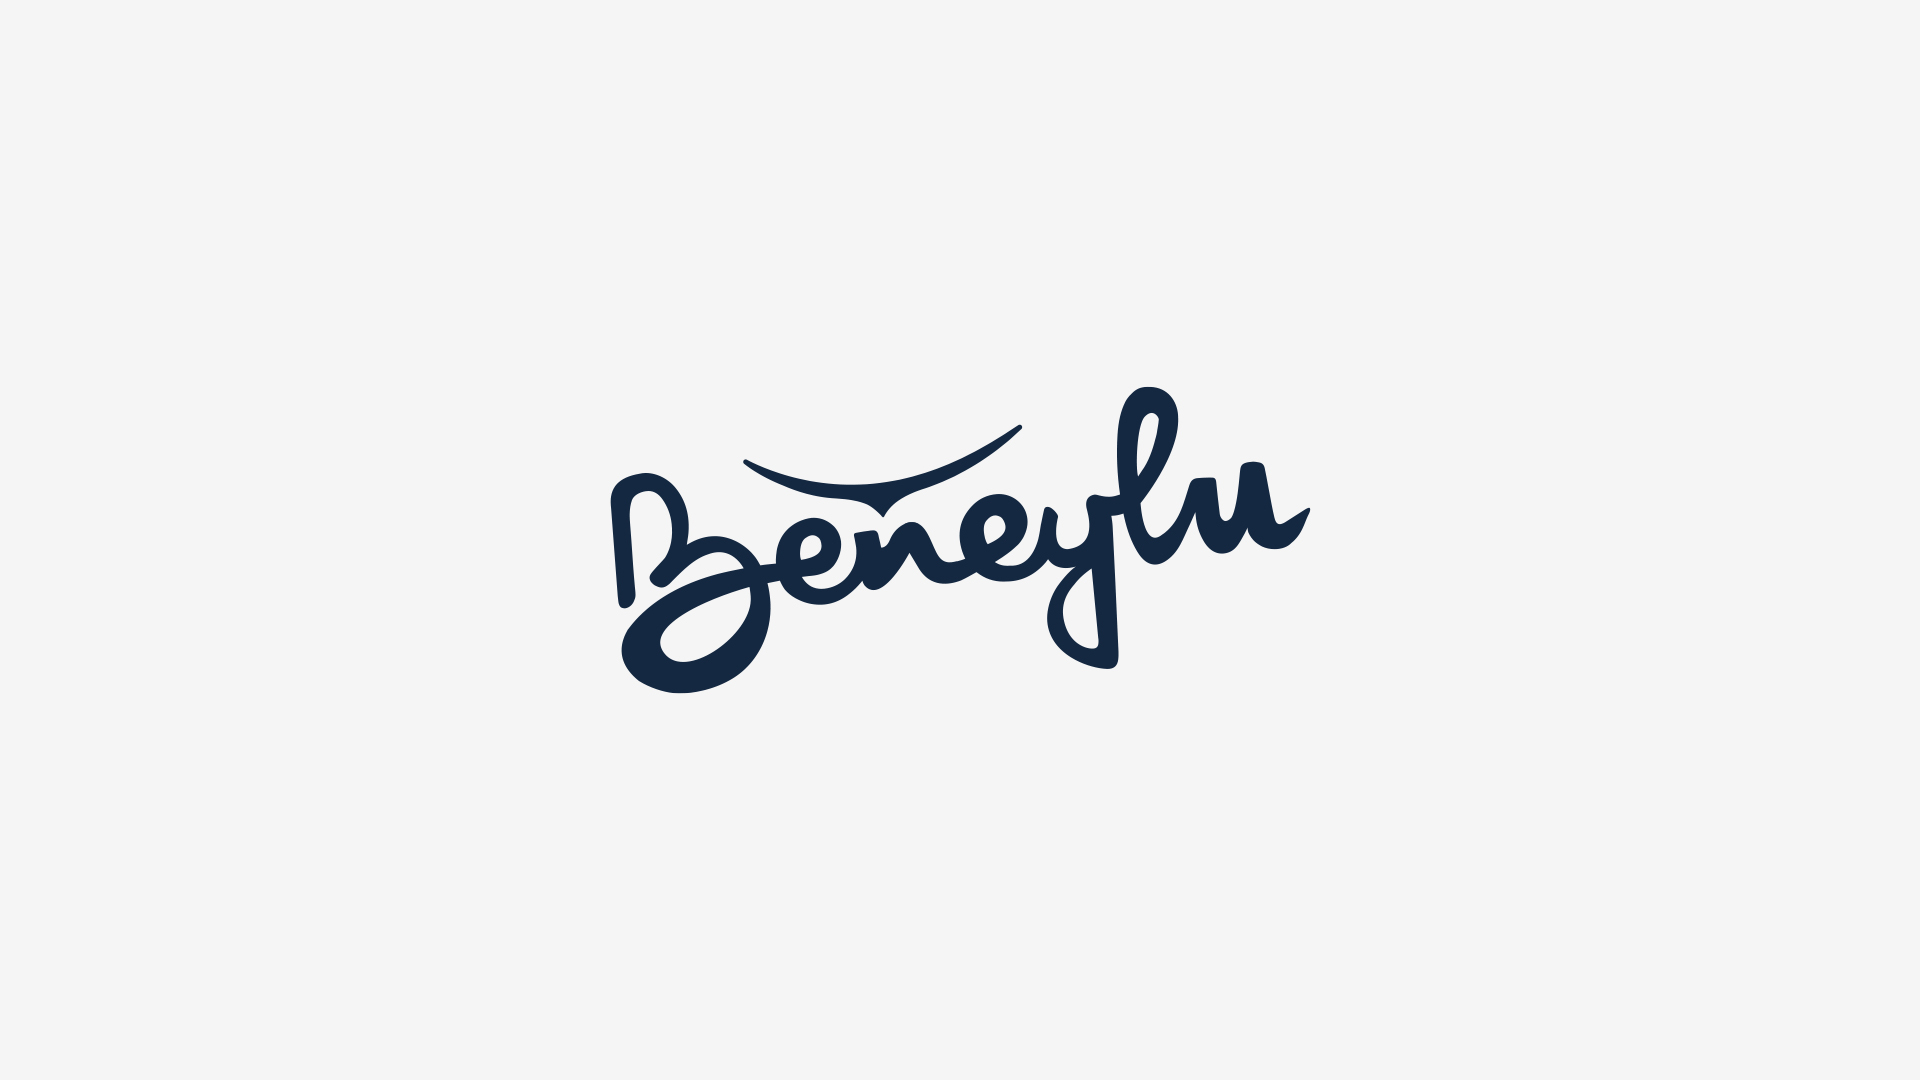 Beneylu Hypersthene Logotype Fond Gris